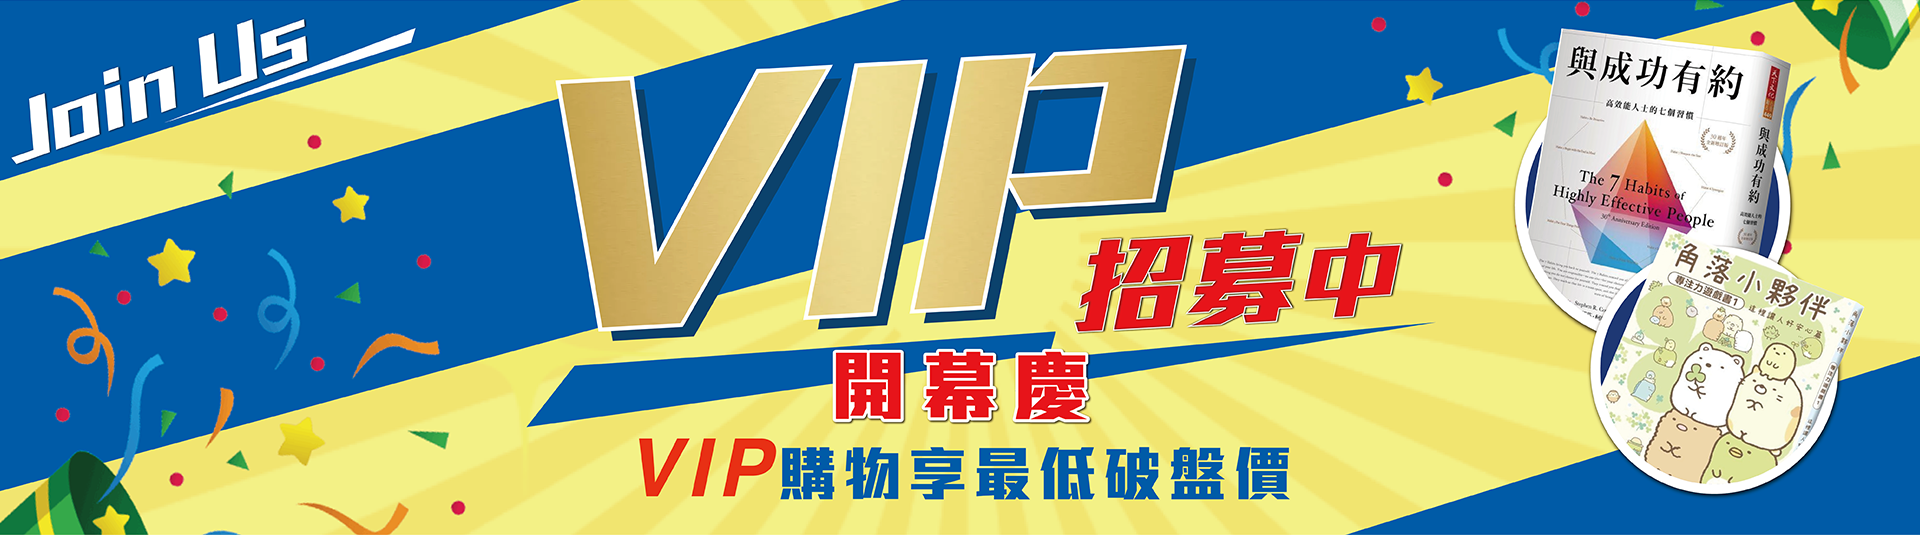 VIP-Banner-A